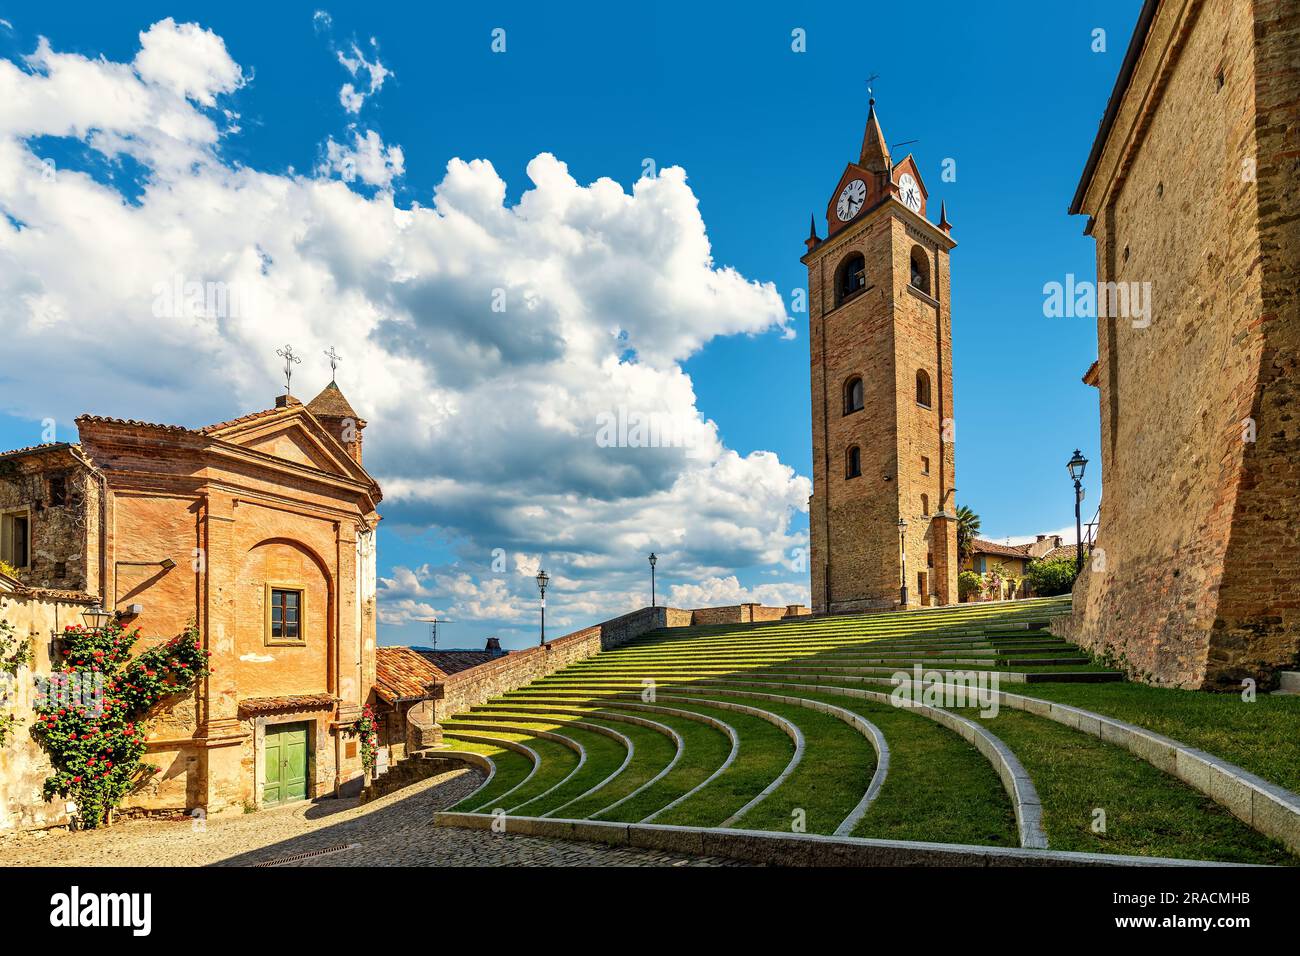 Chiesetta, campanile e anfiteatro all'aperto sotto il cielo azzurro con nuvole bianche nella cittadina di Monforte d'Alba, Italia. Foto Stock